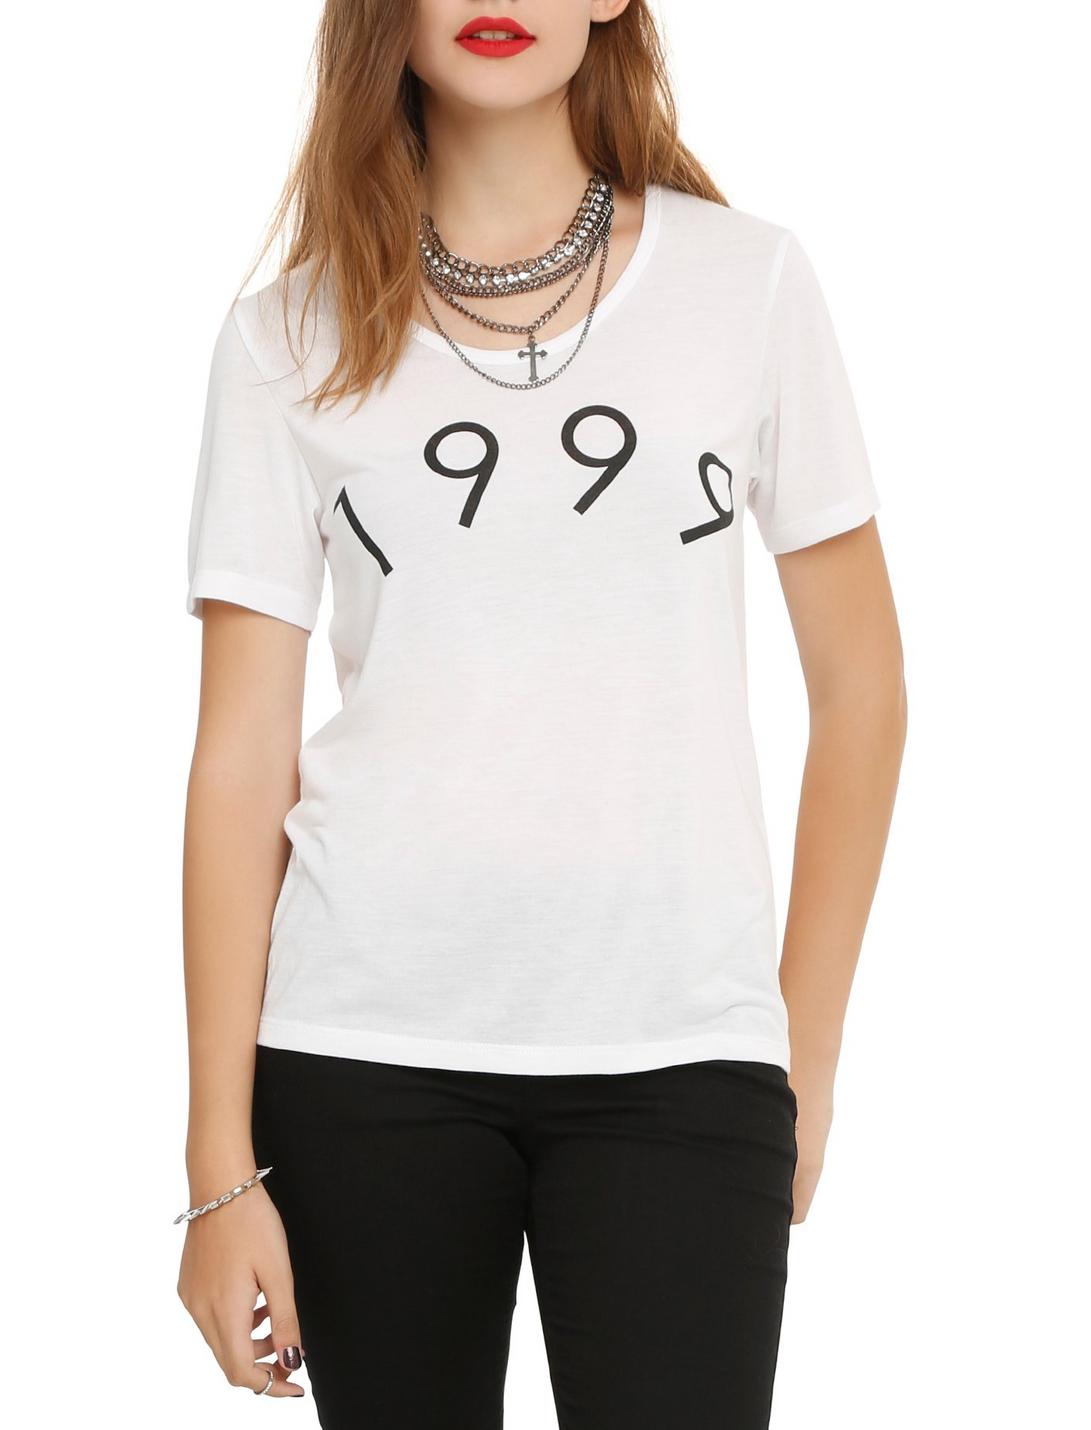 1999 Nostalgia Girls T-Shirt, WHITE, hi-res